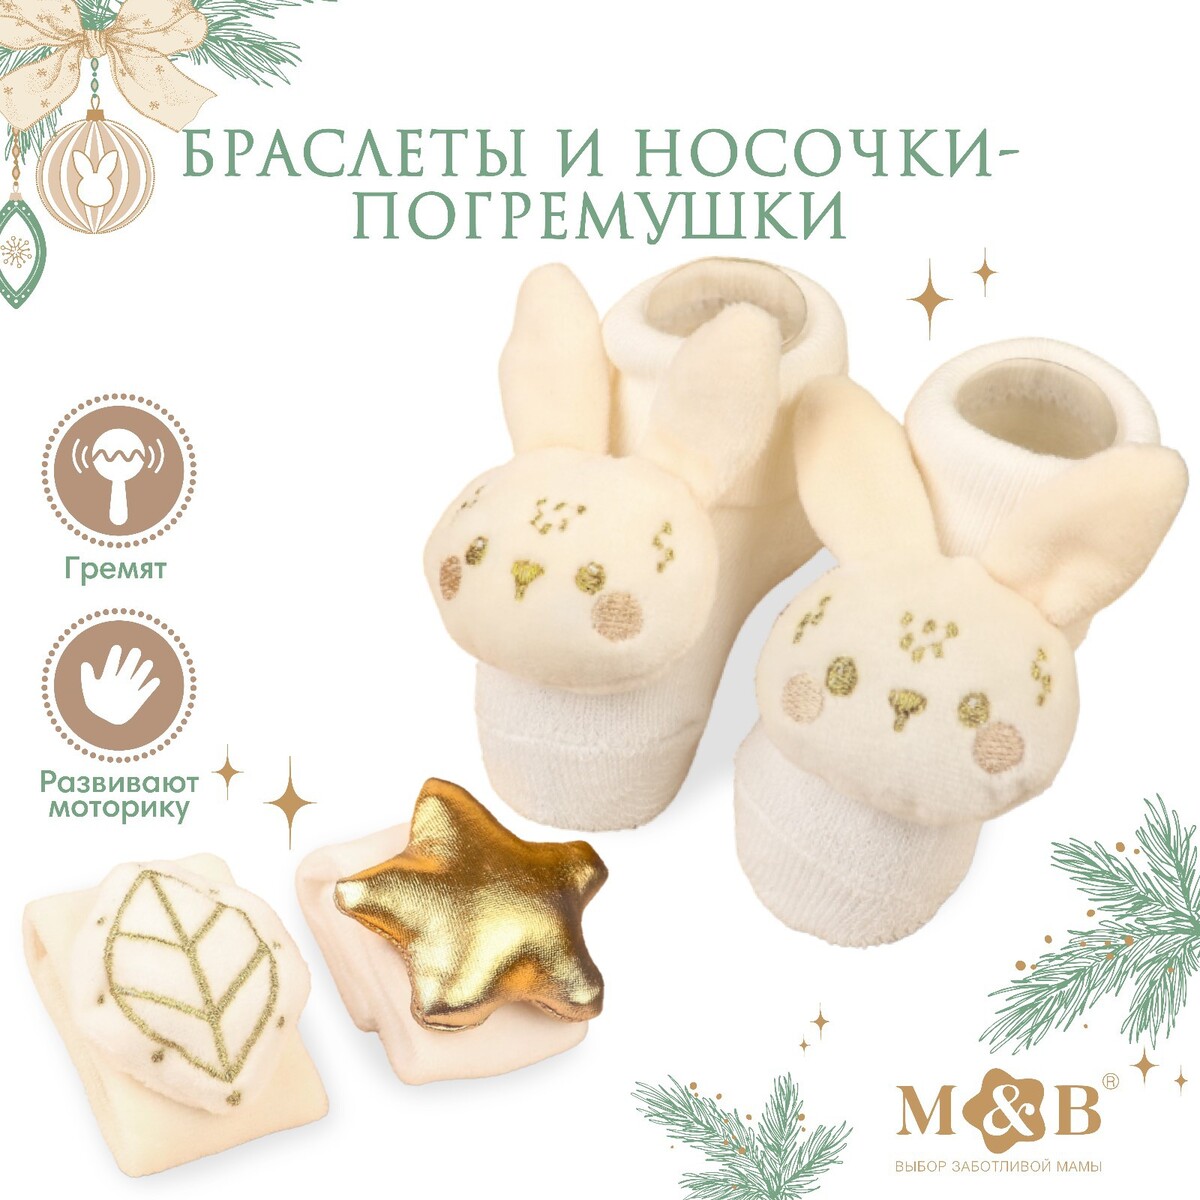 Подарочный набор новогодний: браслетики - погремушки и носочки - погремушки на ножки